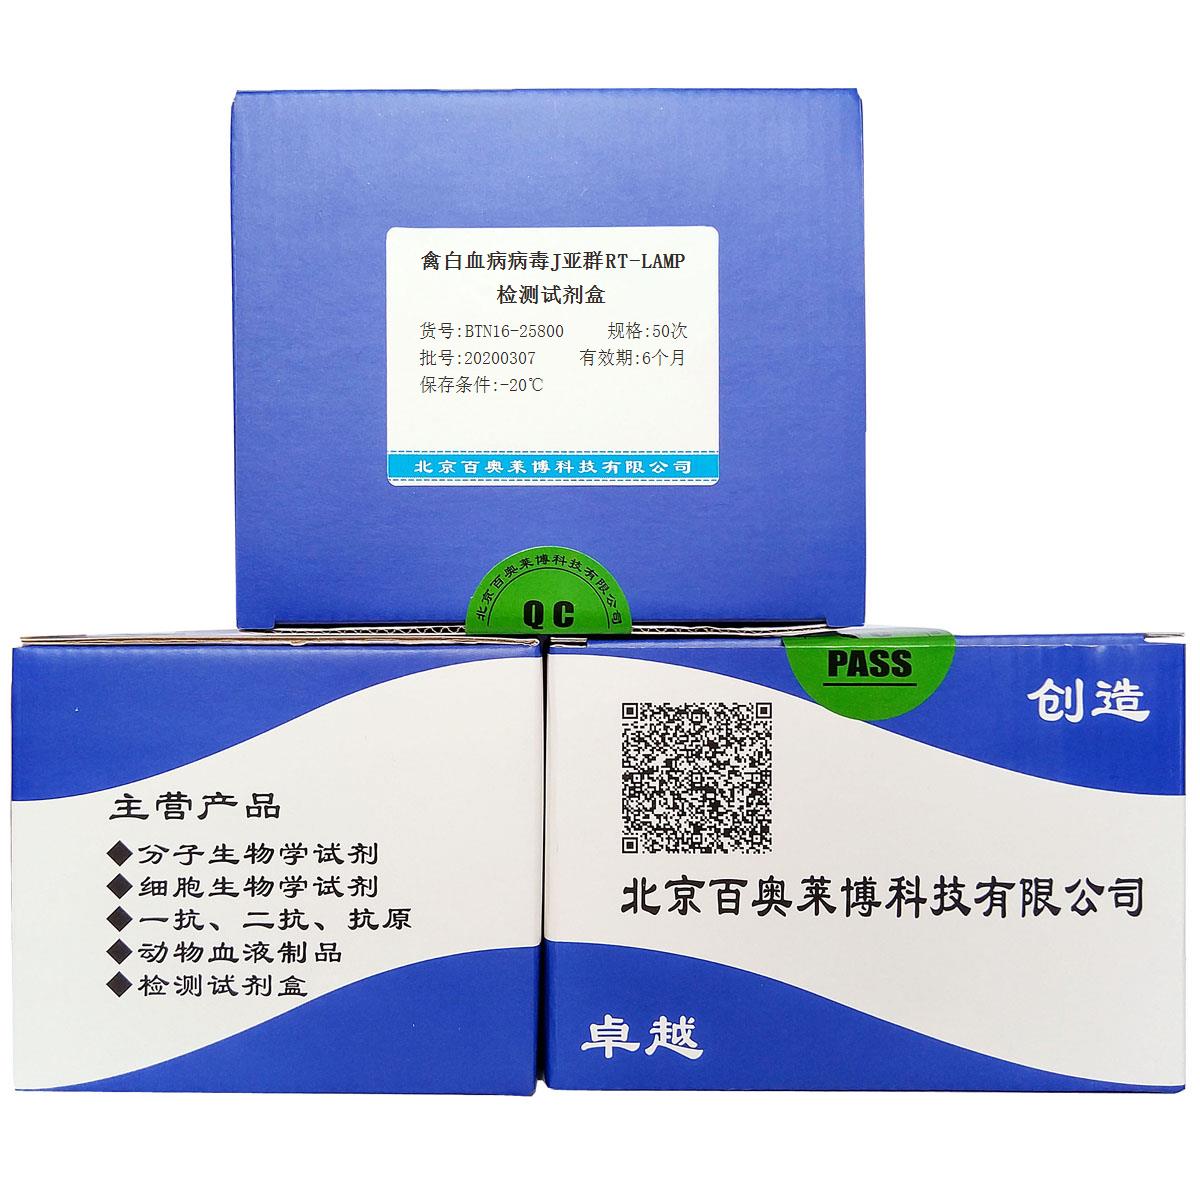 禽白血病病毒J亚群RT-LAMP检测试剂盒